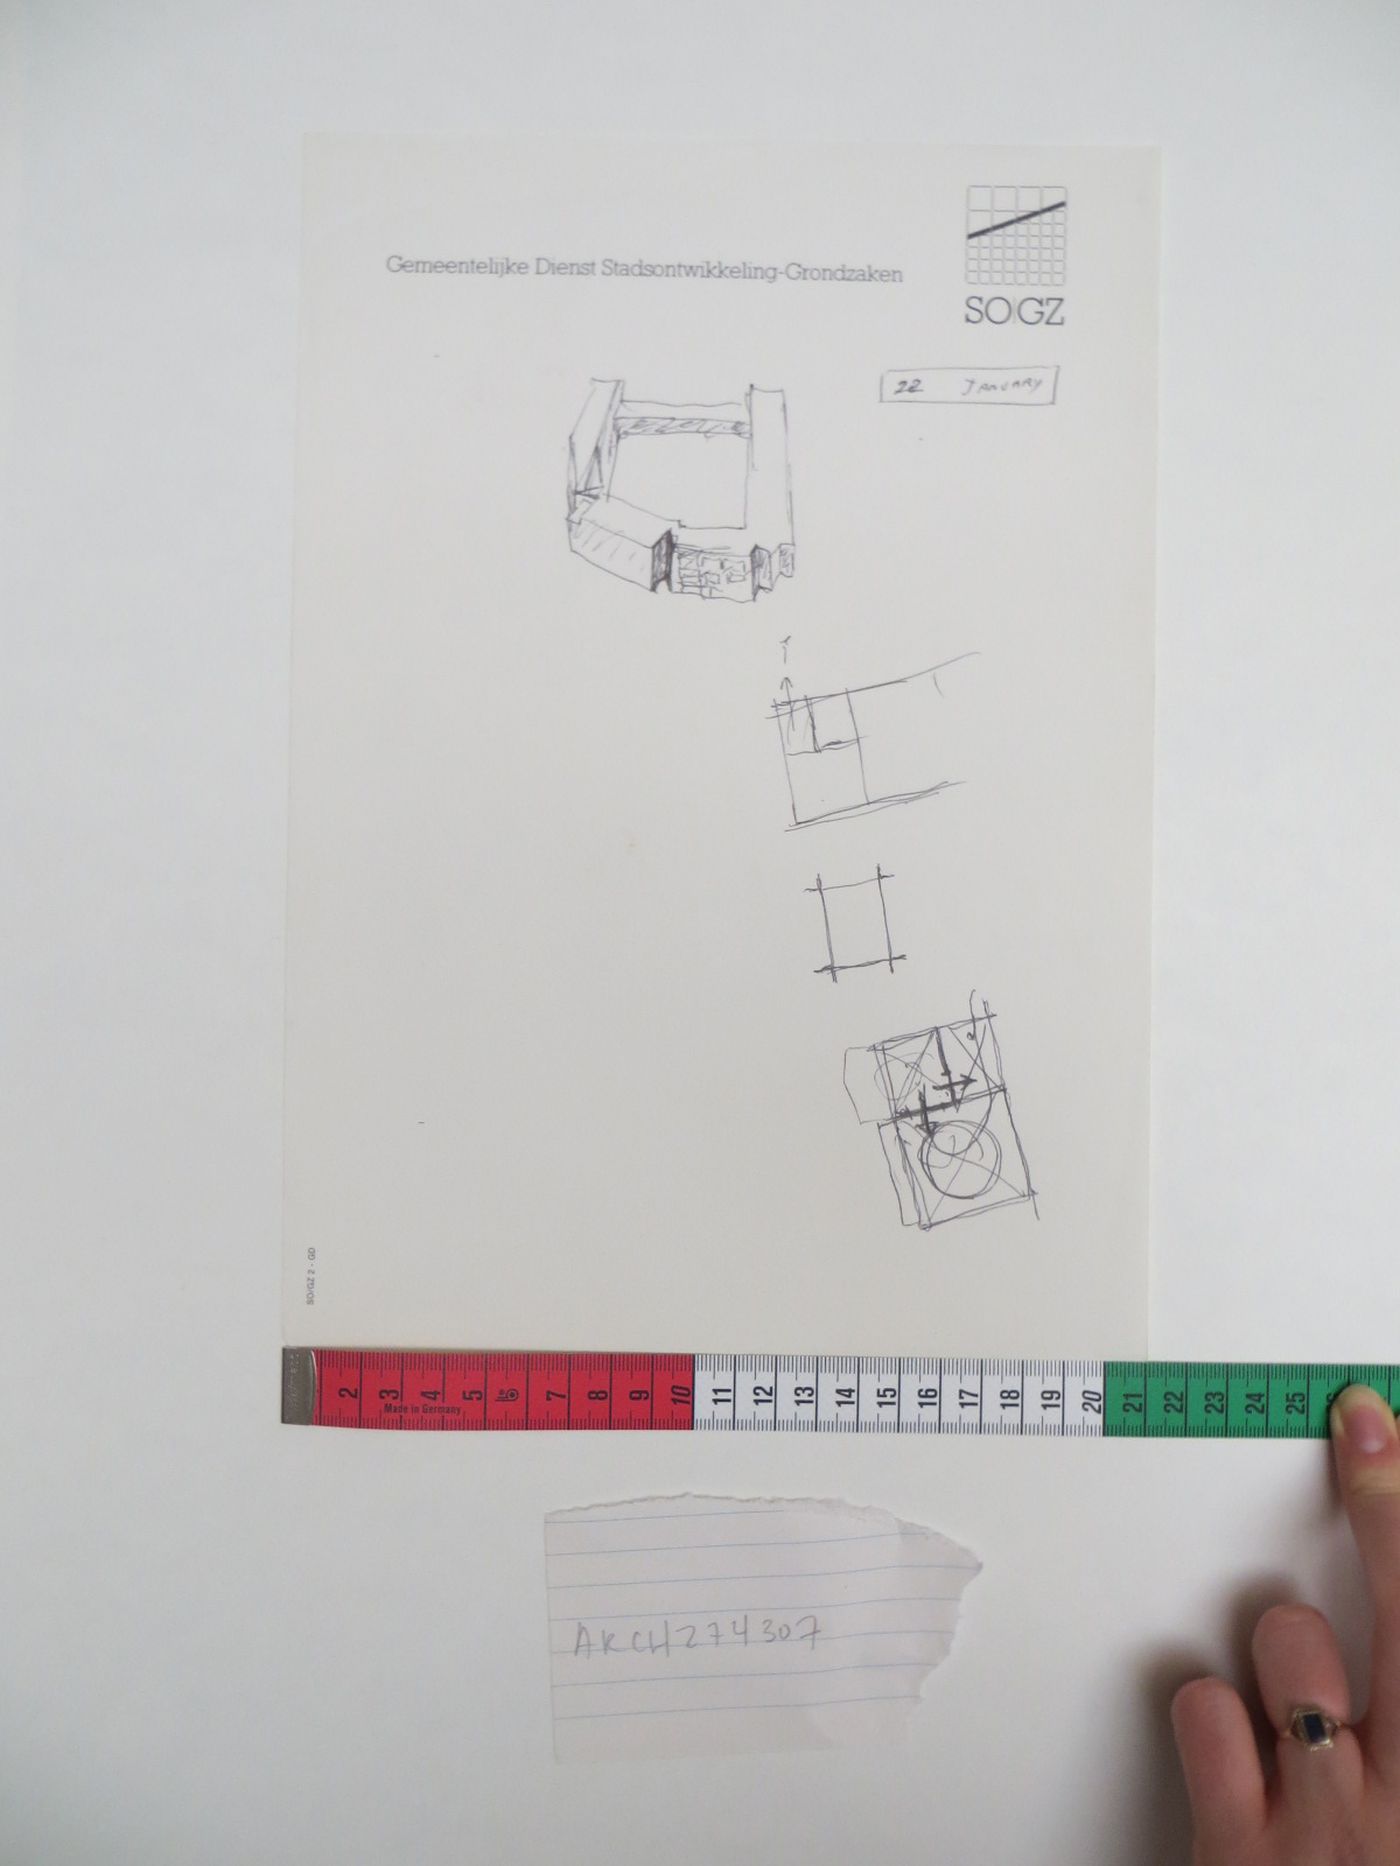 Sketch of block corner and access studies, Punt en Komma, The Hague